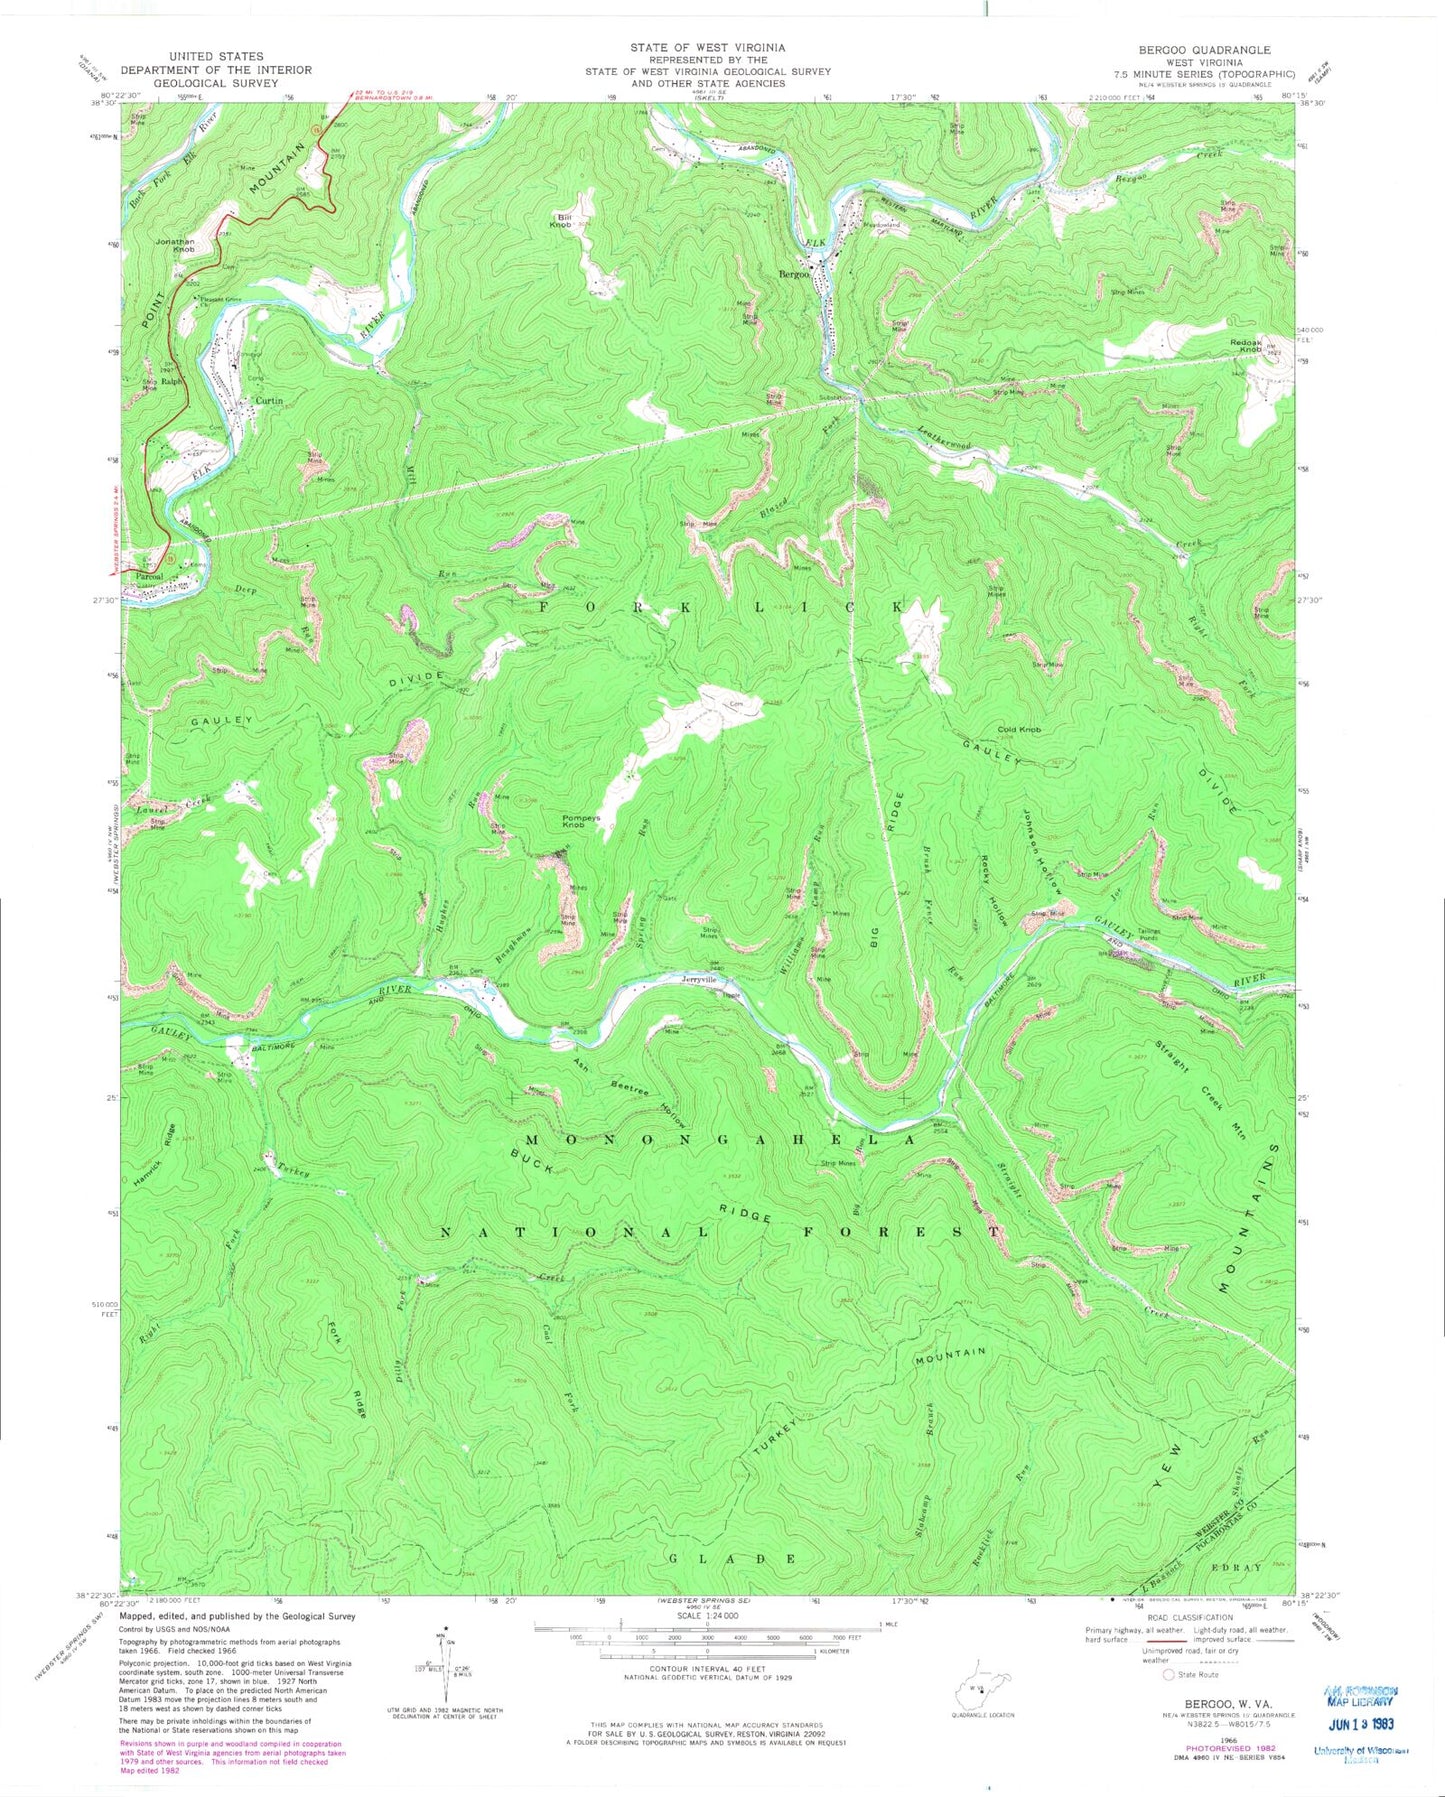 Classic USGS Bergoo West Virginia 7.5'x7.5' Topo Map Image